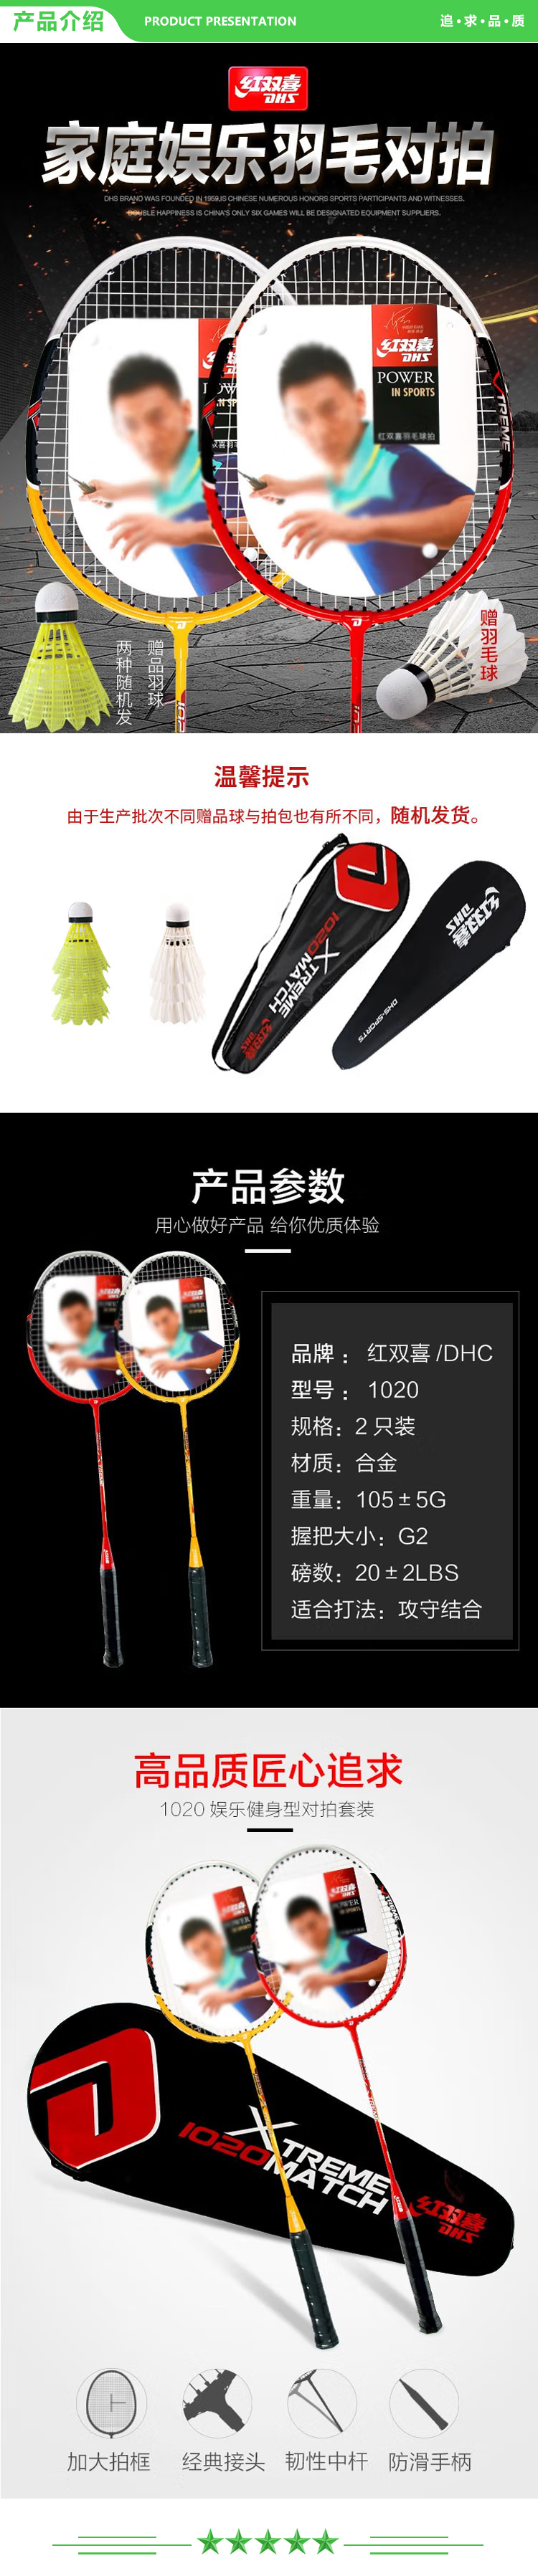 红双喜 DHS 1020 羽毛球拍对拍实惠双拍套装合金羽拍 (已穿线附羽毛球)  2.jpg